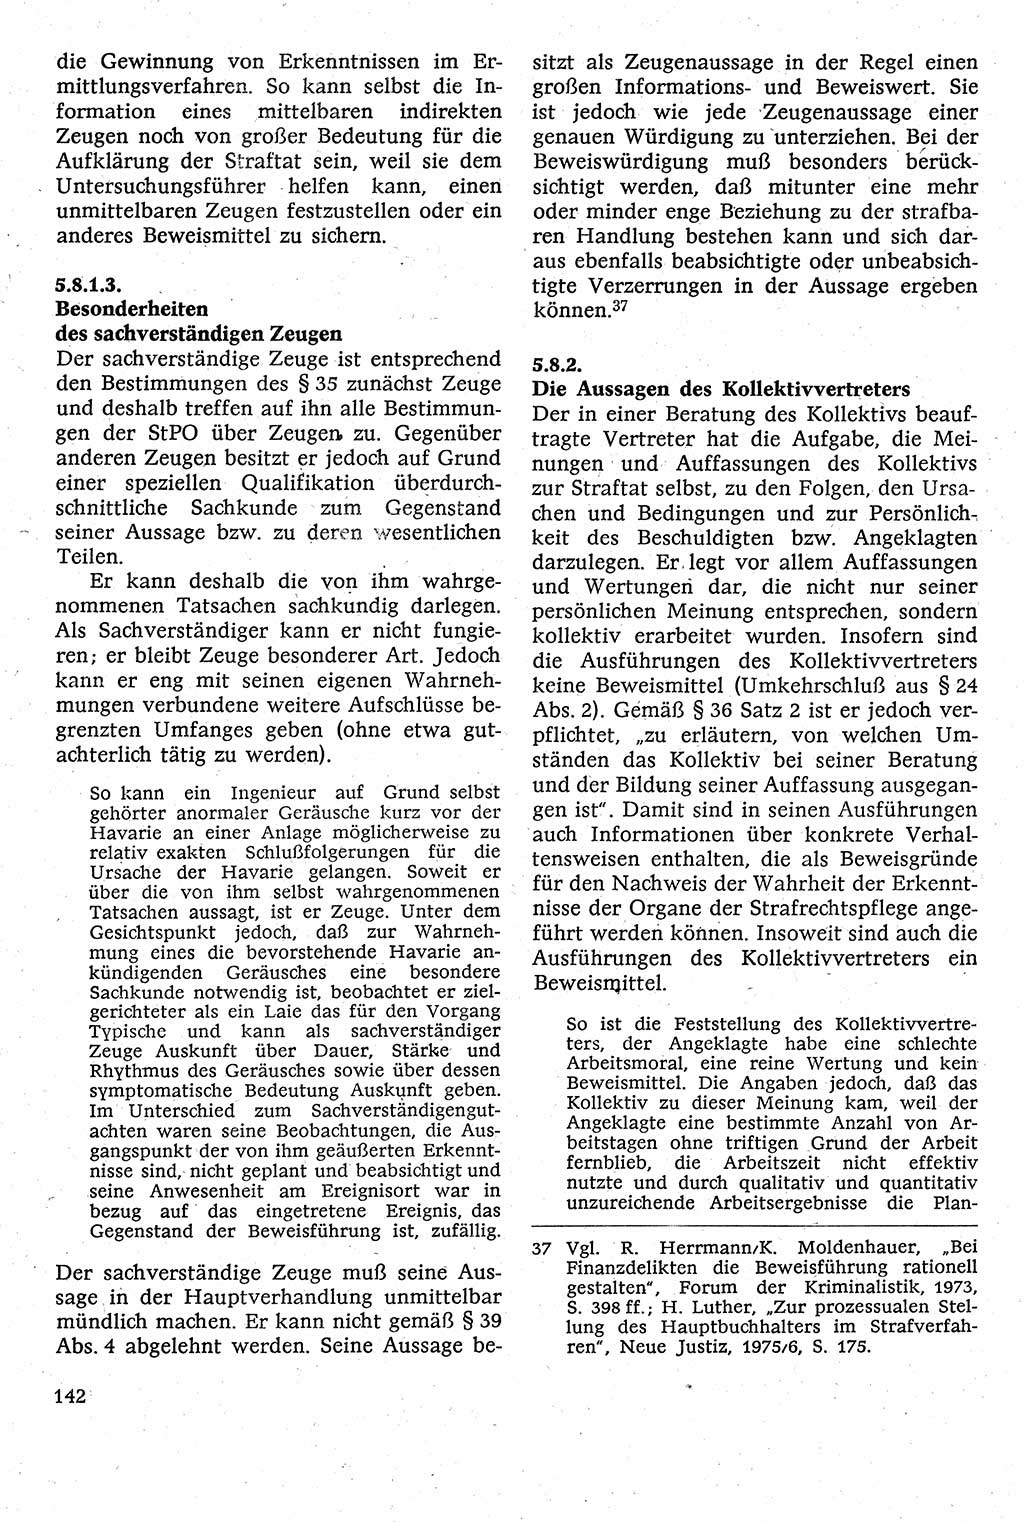 Strafverfahrensrecht [Deutsche Demokratische Republik (DDR)], Lehrbuch 1982, Seite 142 (Strafverf.-R. DDR Lb. 1982, S. 142)